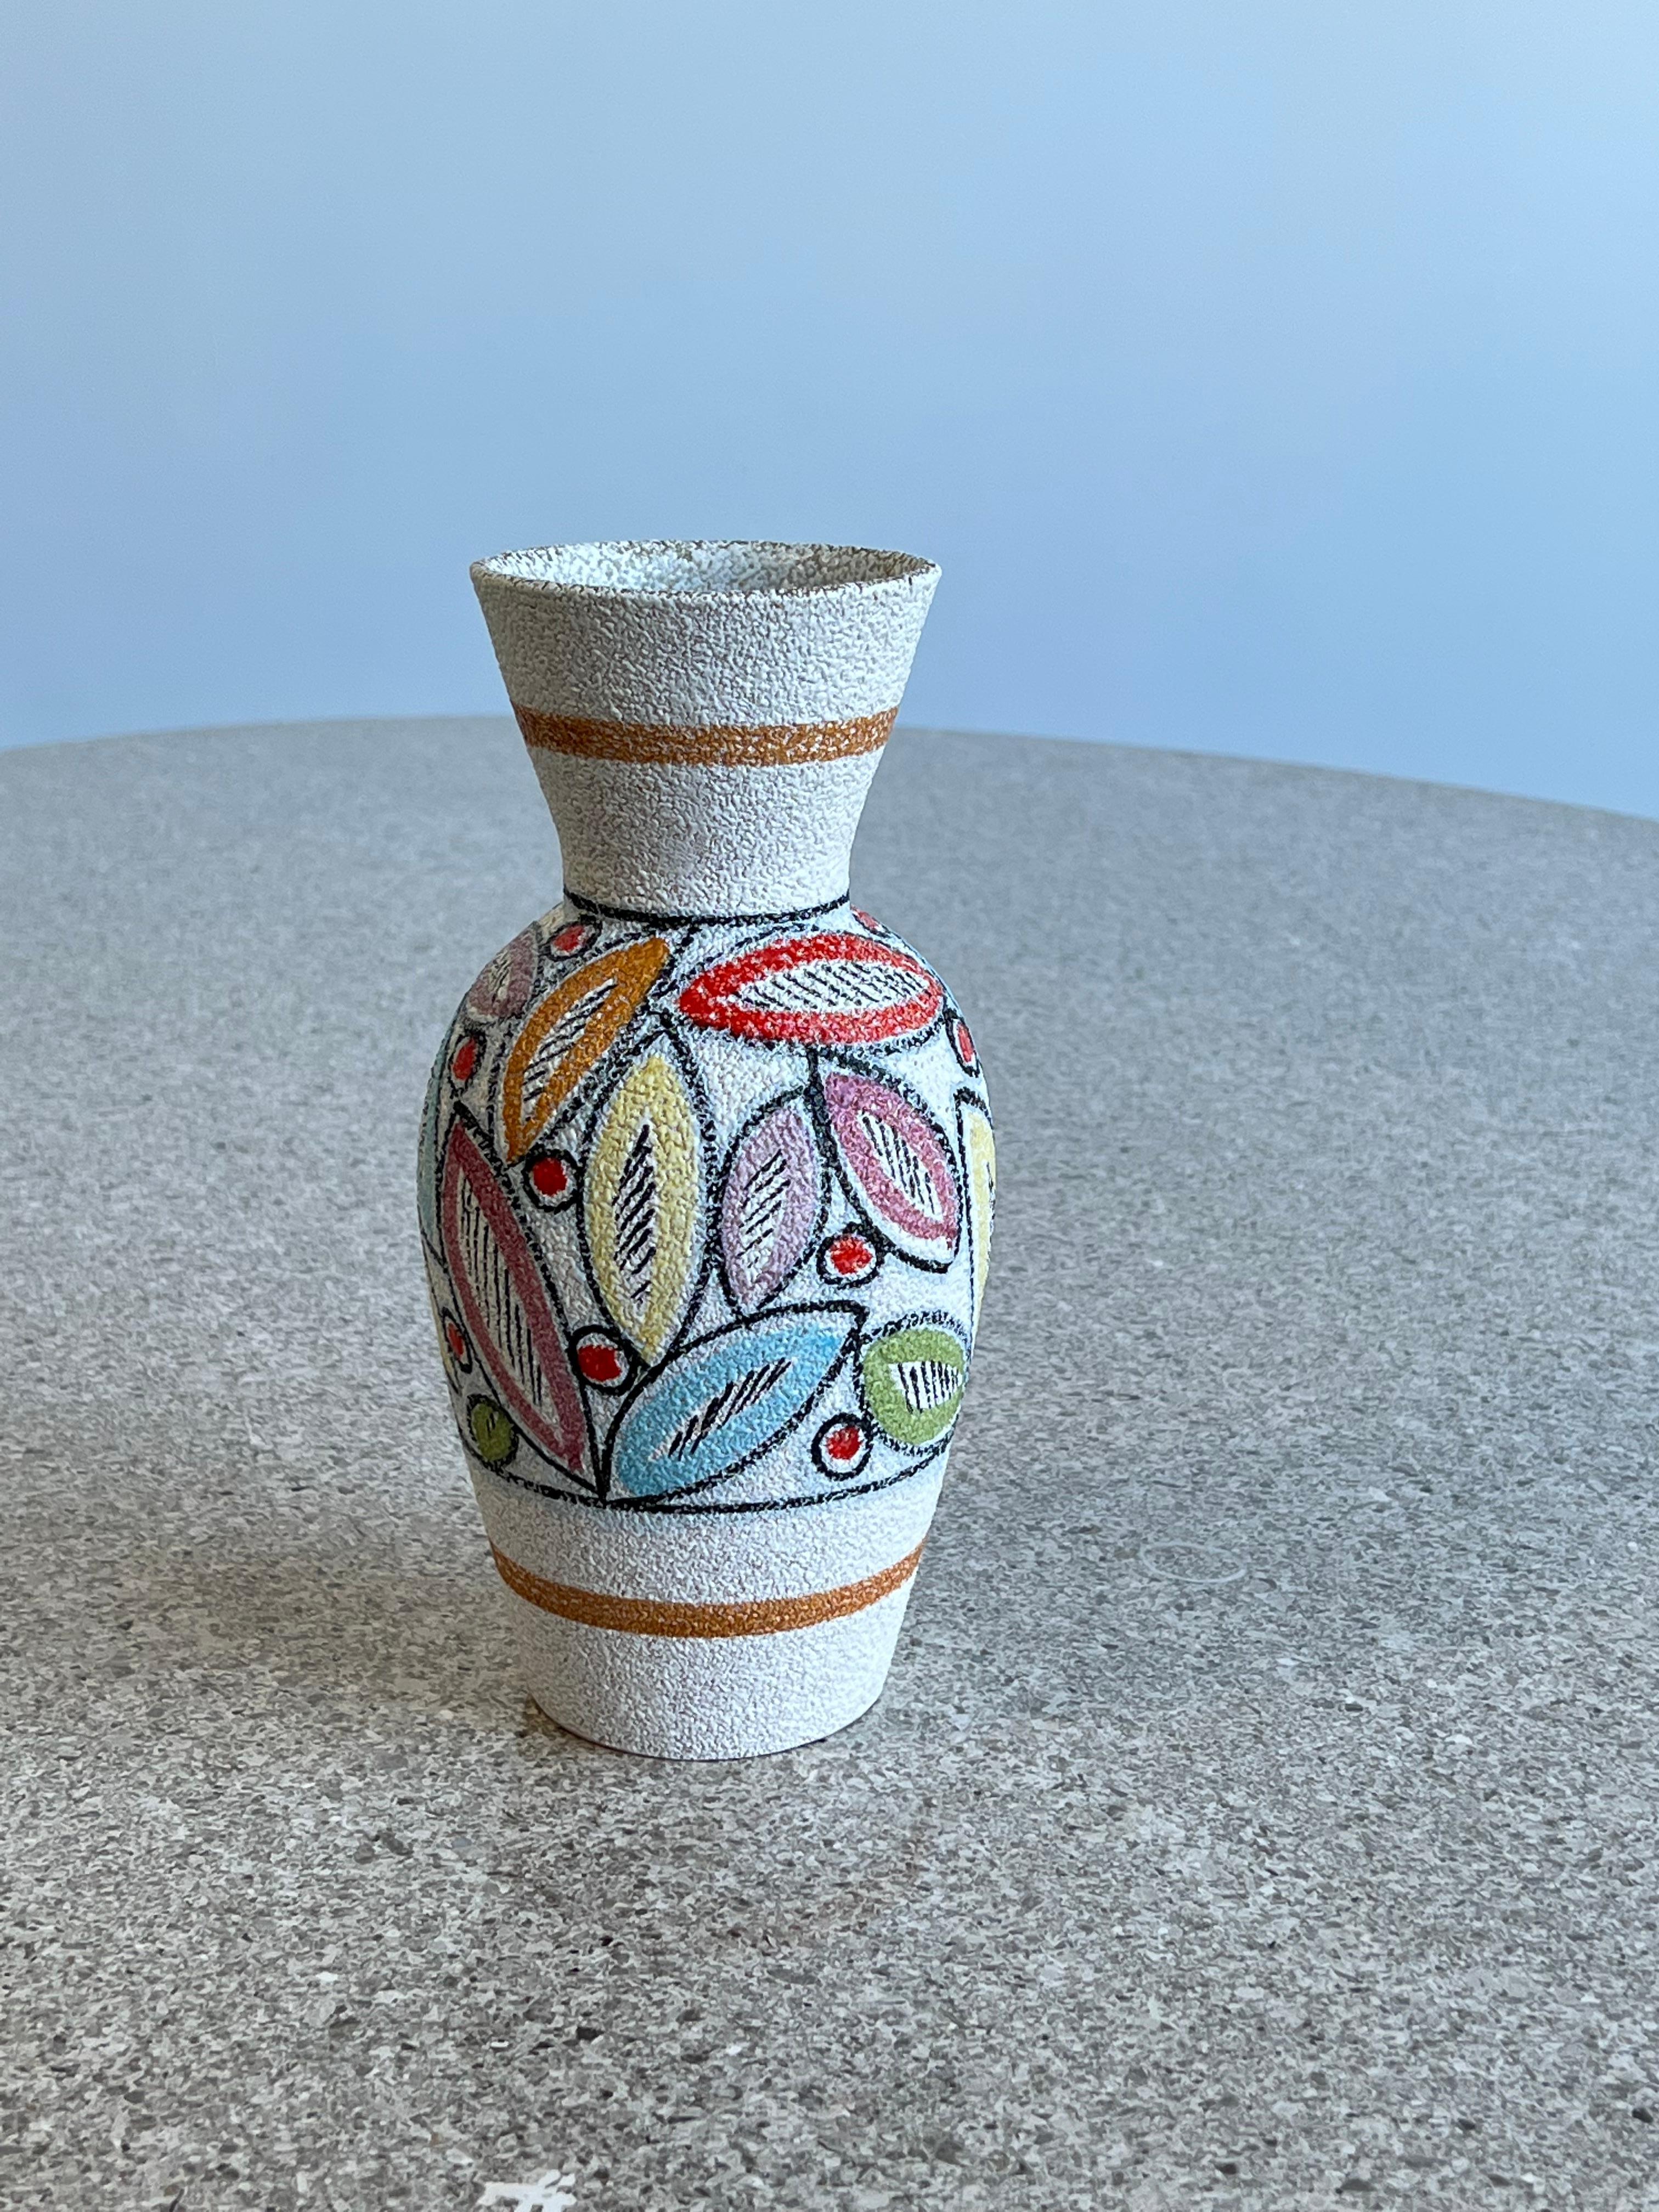 Vase en céramique italienne peint à la main, années 1950.
Magnifique vase peint à la main avec des feuilles abstraites colorées, texture céramique étonnante.